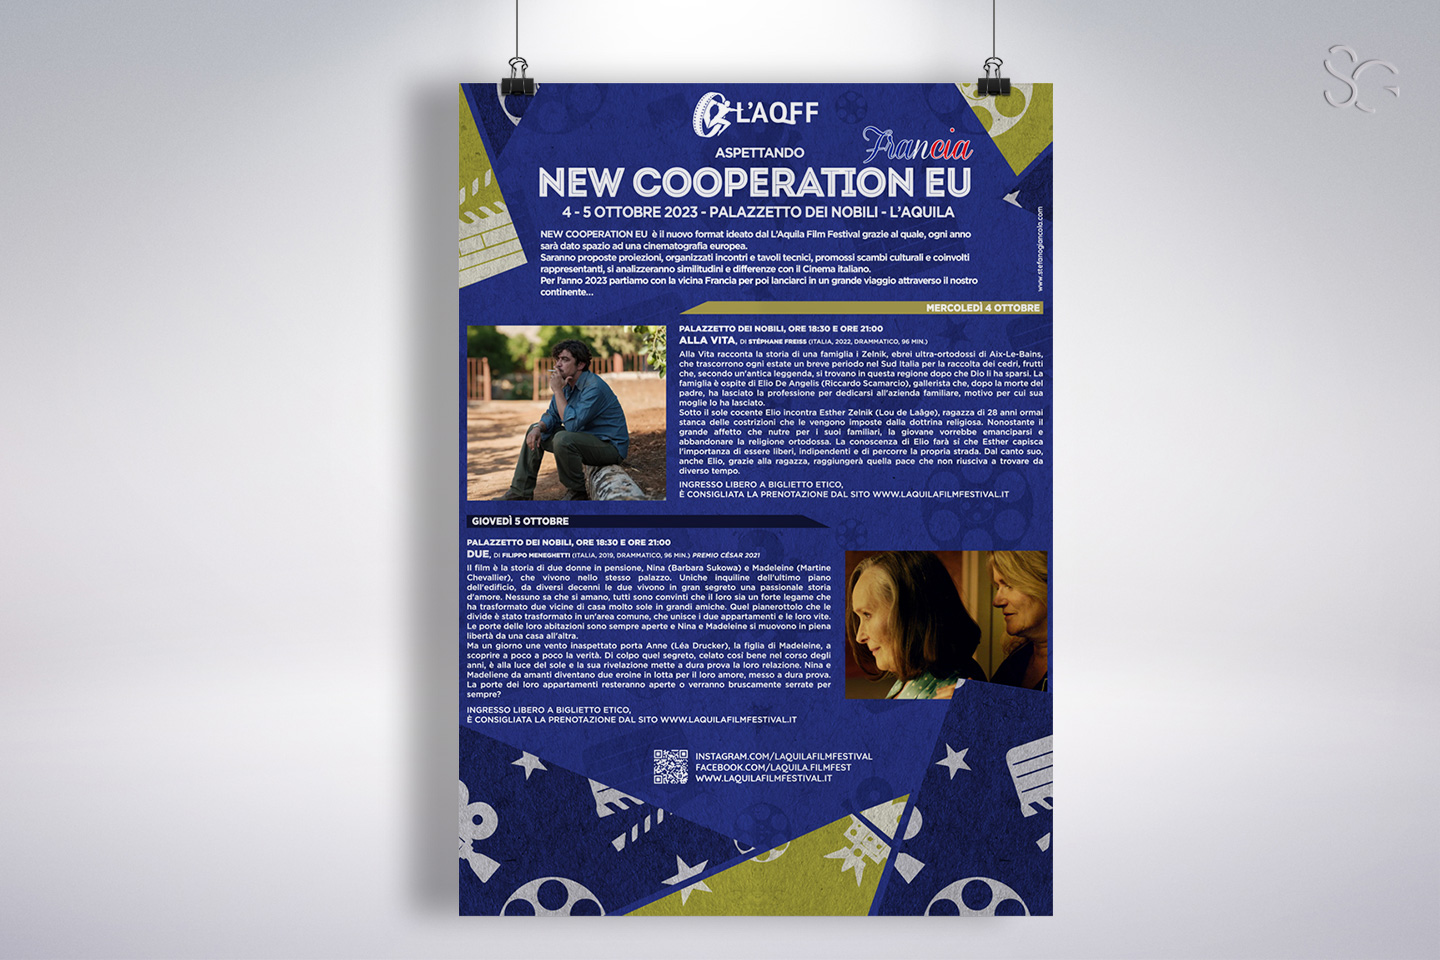 locandina-new-cooperation-eu-francia-laqff